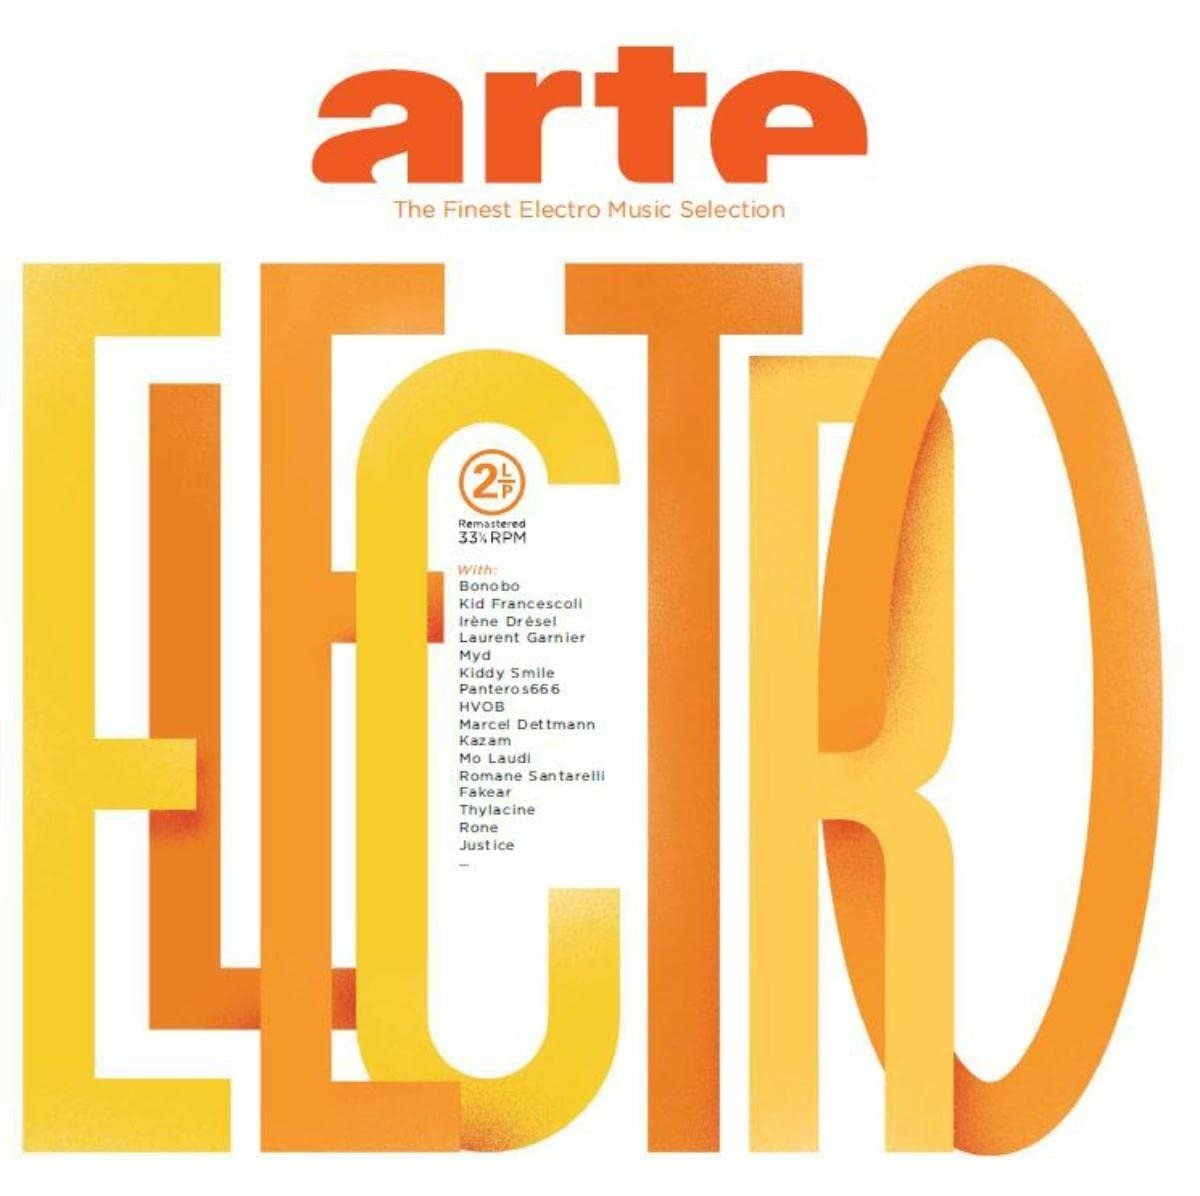 CD Shop - V/A ARTE ELECTRO